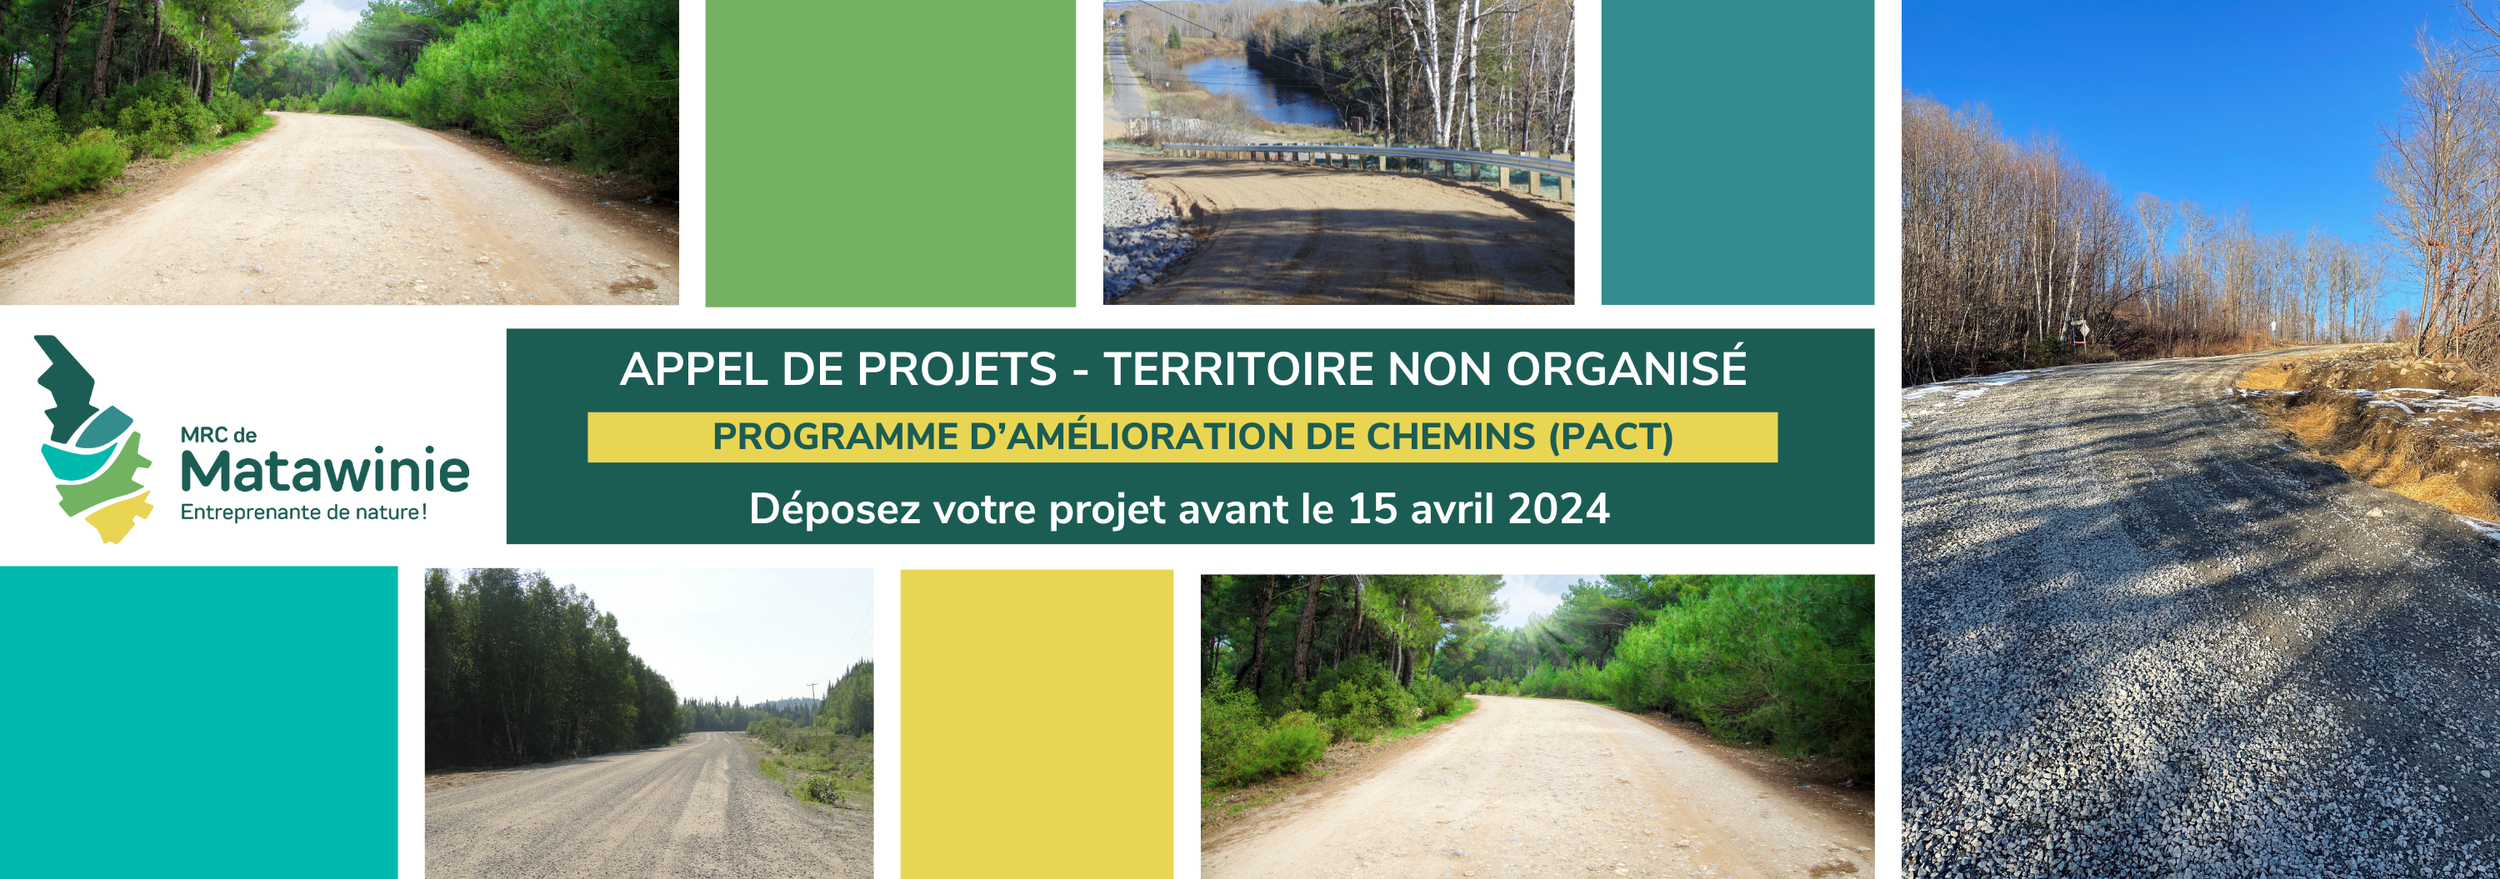 Appel de projets PACT 2024_Bannière.png